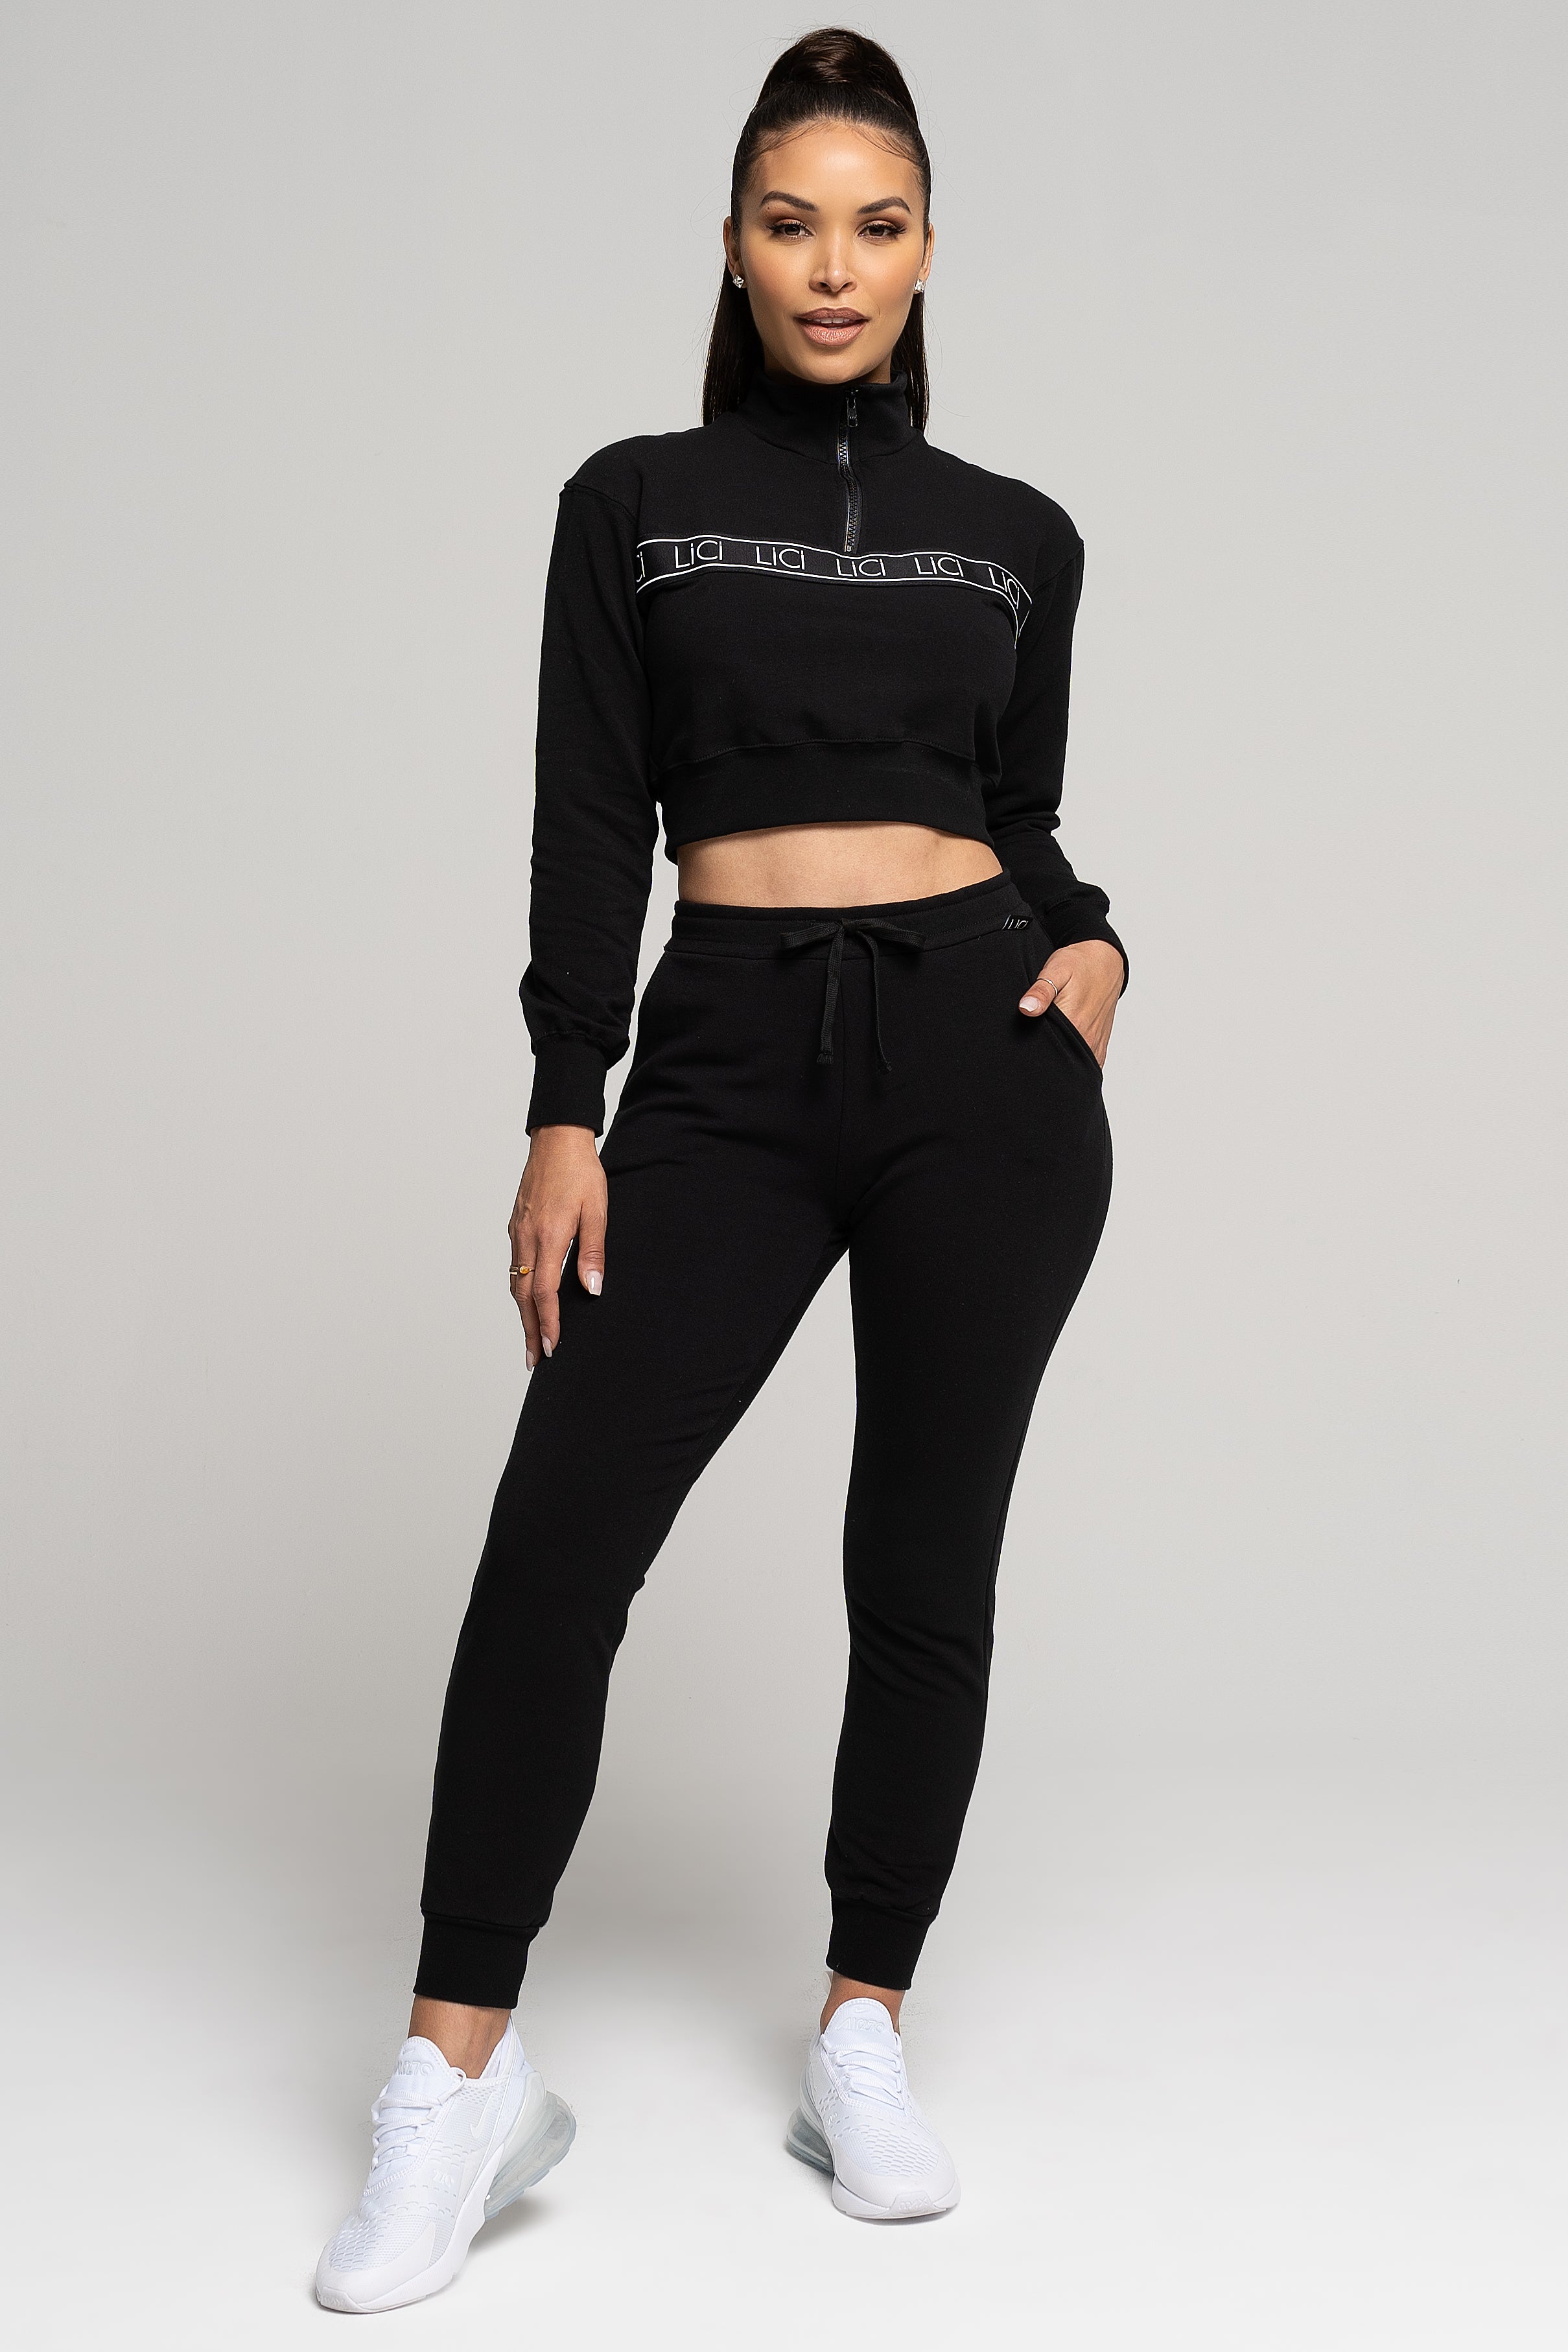 LiCi Fit Black Fitted Sweatpants & Black Fleece Quarter-Zip Sweatshirt 